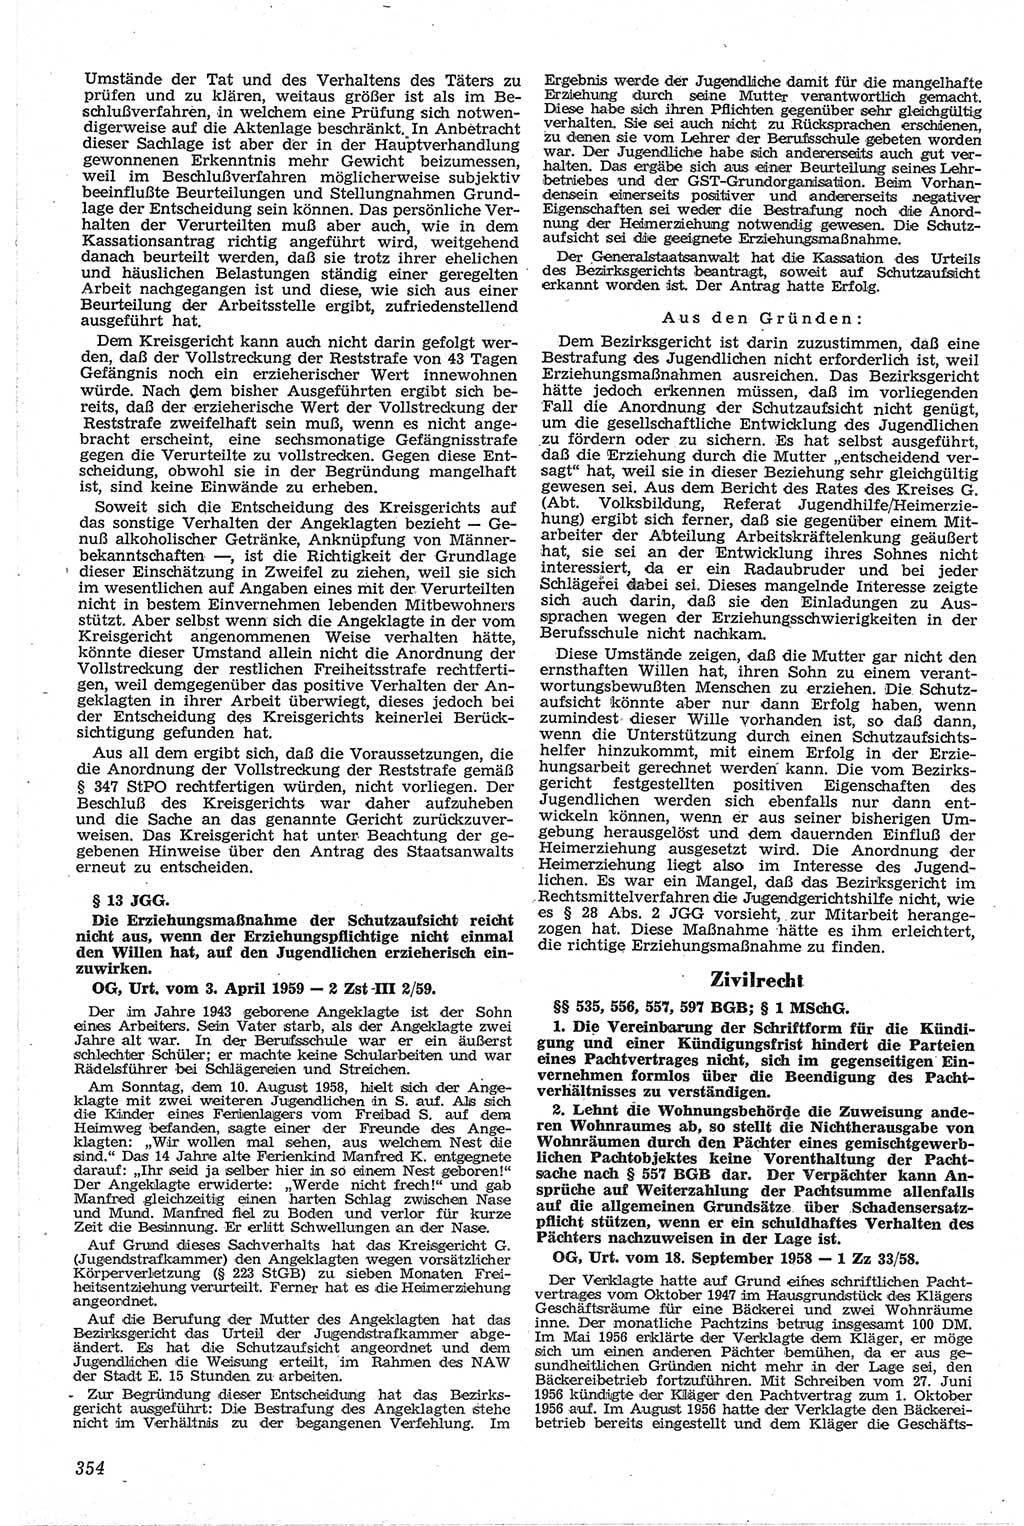 Neue Justiz (NJ), Zeitschrift für Recht und Rechtswissenschaft [Deutsche Demokratische Republik (DDR)], 13. Jahrgang 1959, Seite 354 (NJ DDR 1959, S. 354)